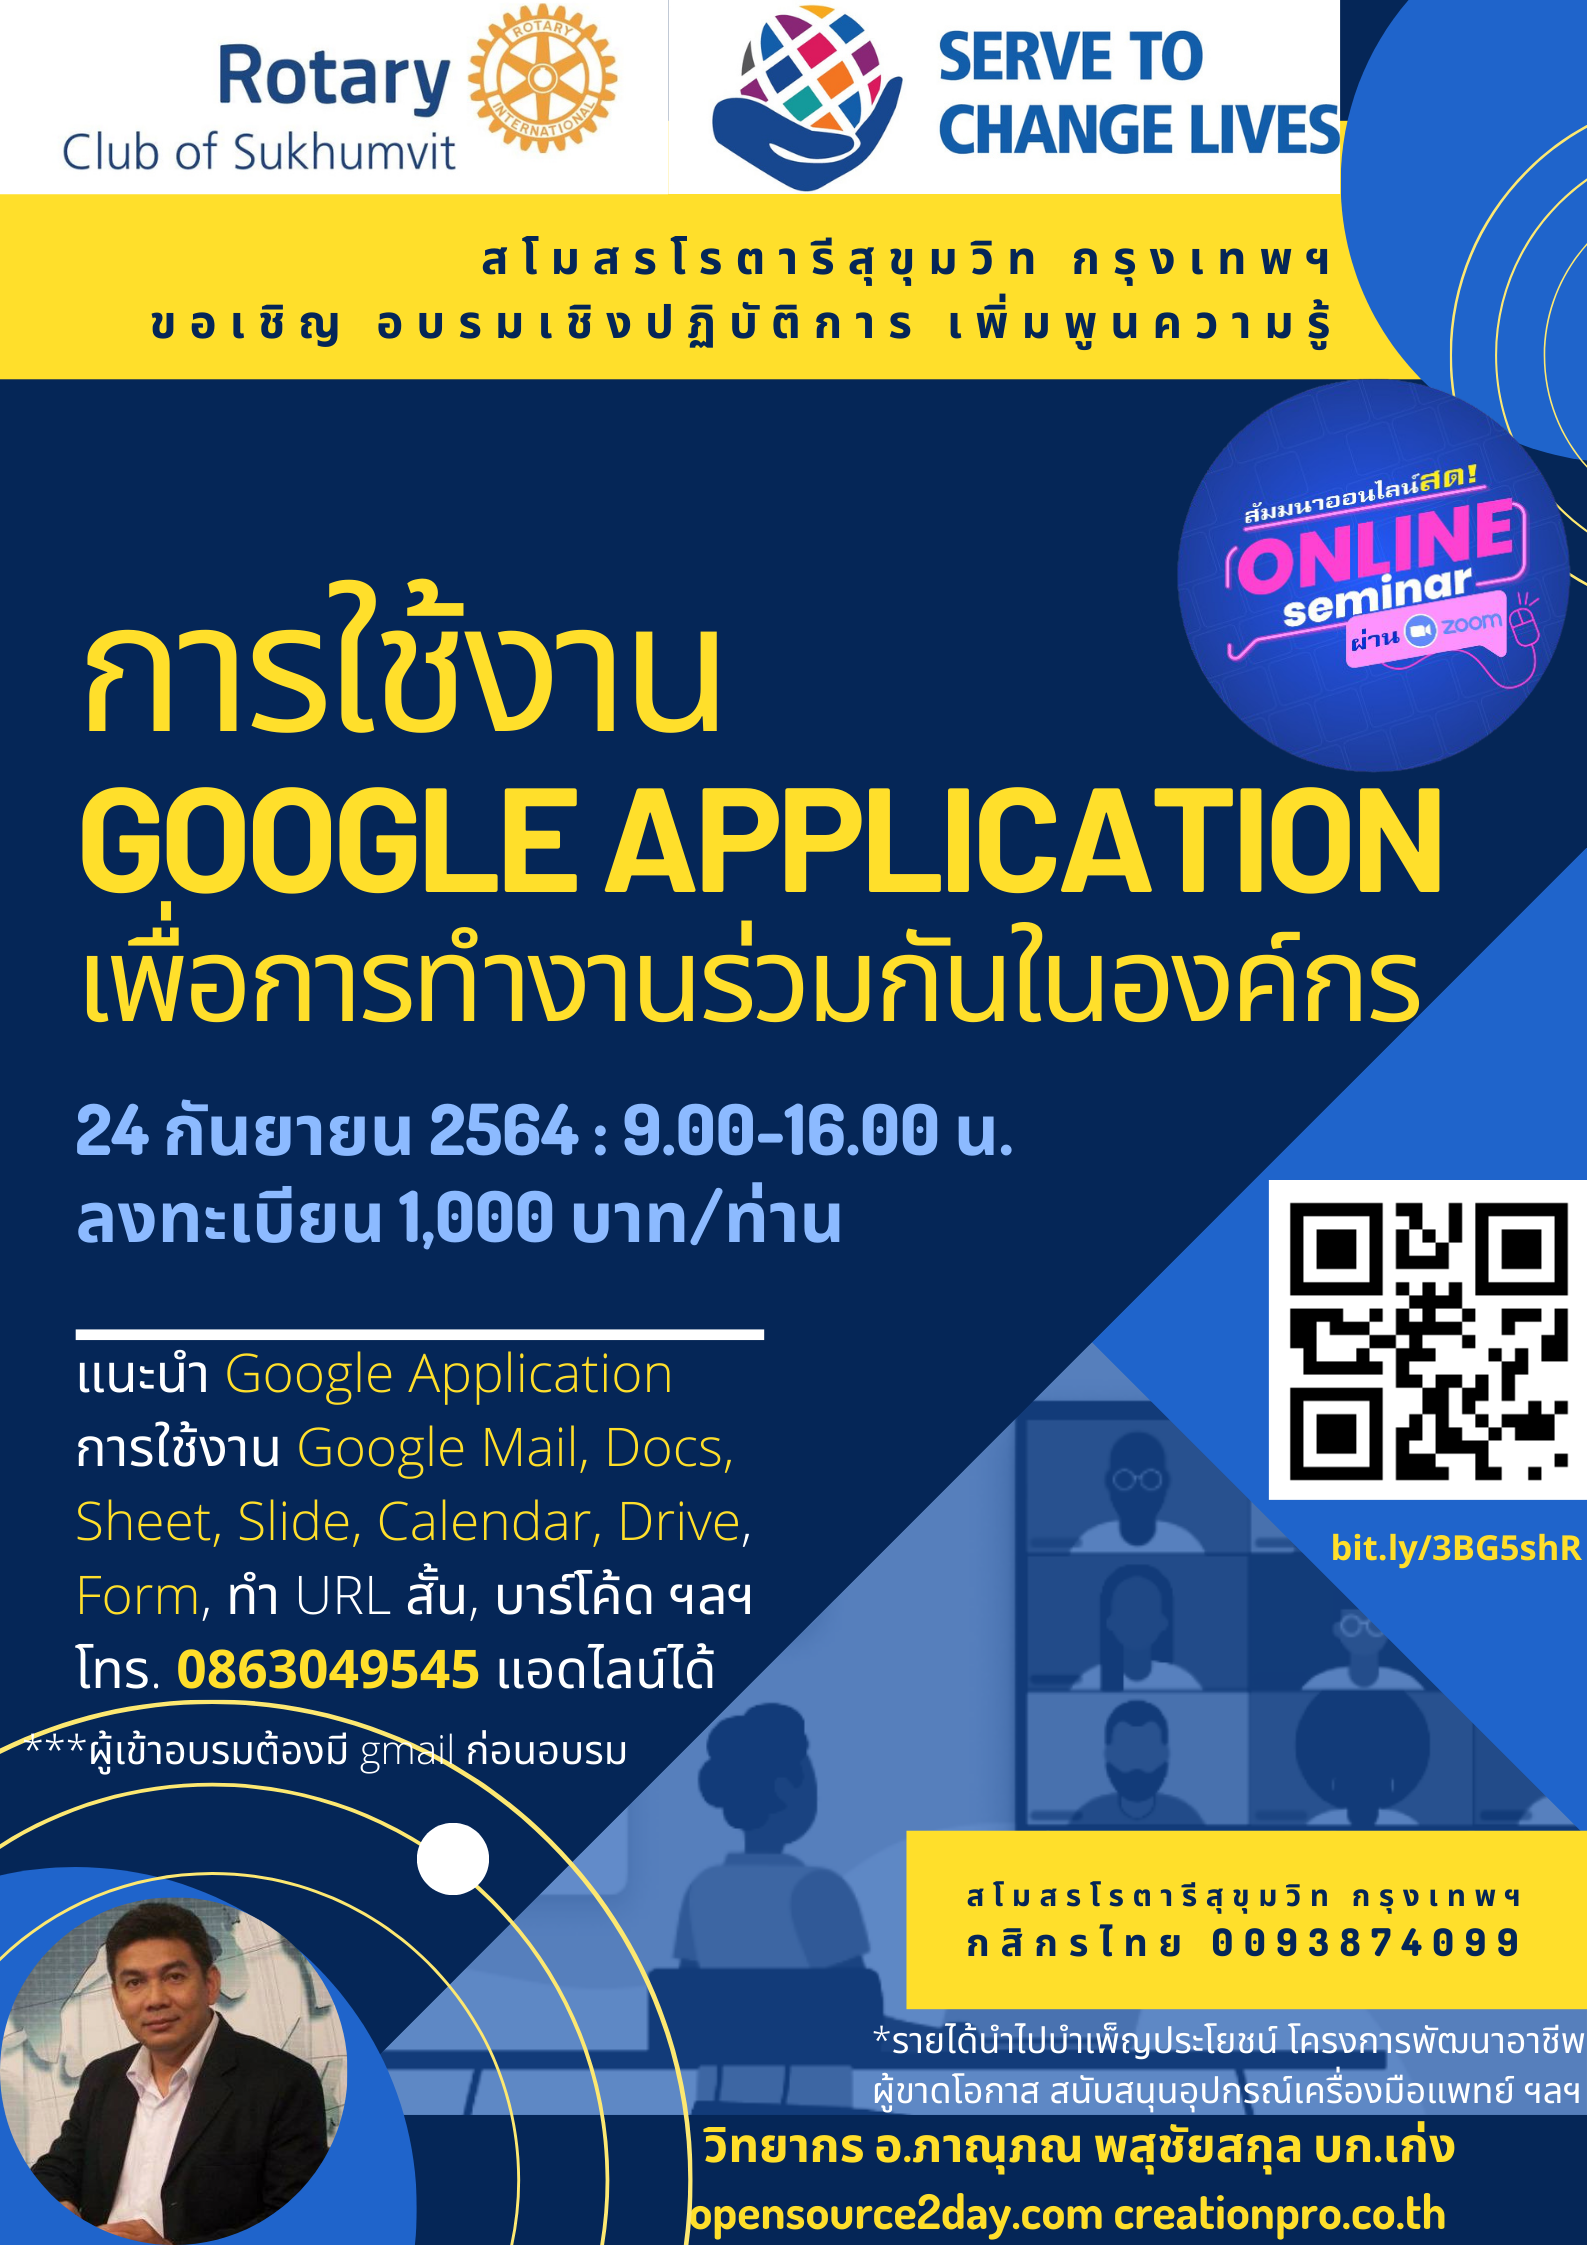 สโมสรโรตารีสุขุมวิท กรุงเทพฯ ขอเชิญอบรม การใช้งานGoogle Application เพื่อการทำงานร่วมกันในองค์กร 24 กันยายน 2564 รายได้เพื่อการบำเพ็ญประโยชน์ต่อสังคม